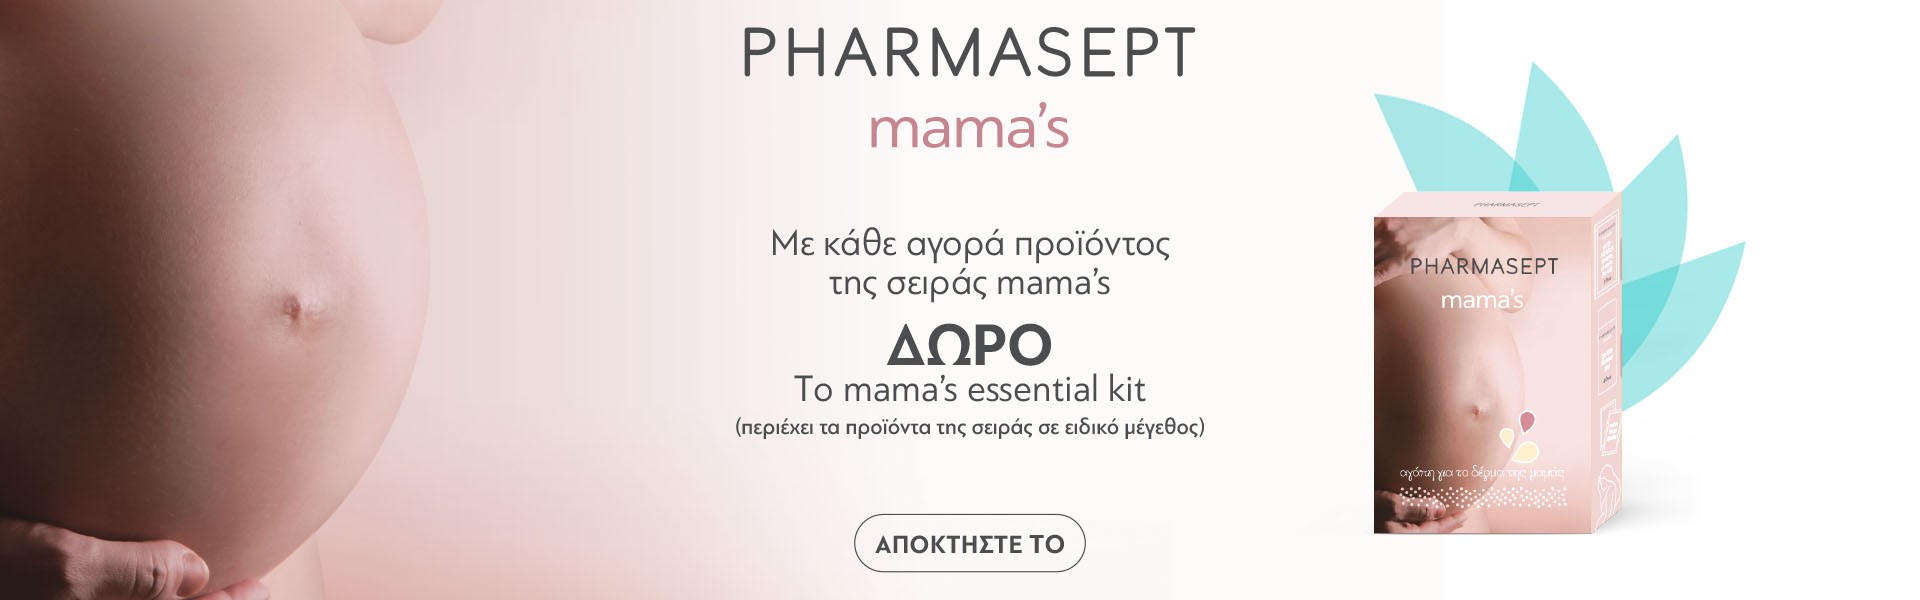 Pharmasept Mamas gift